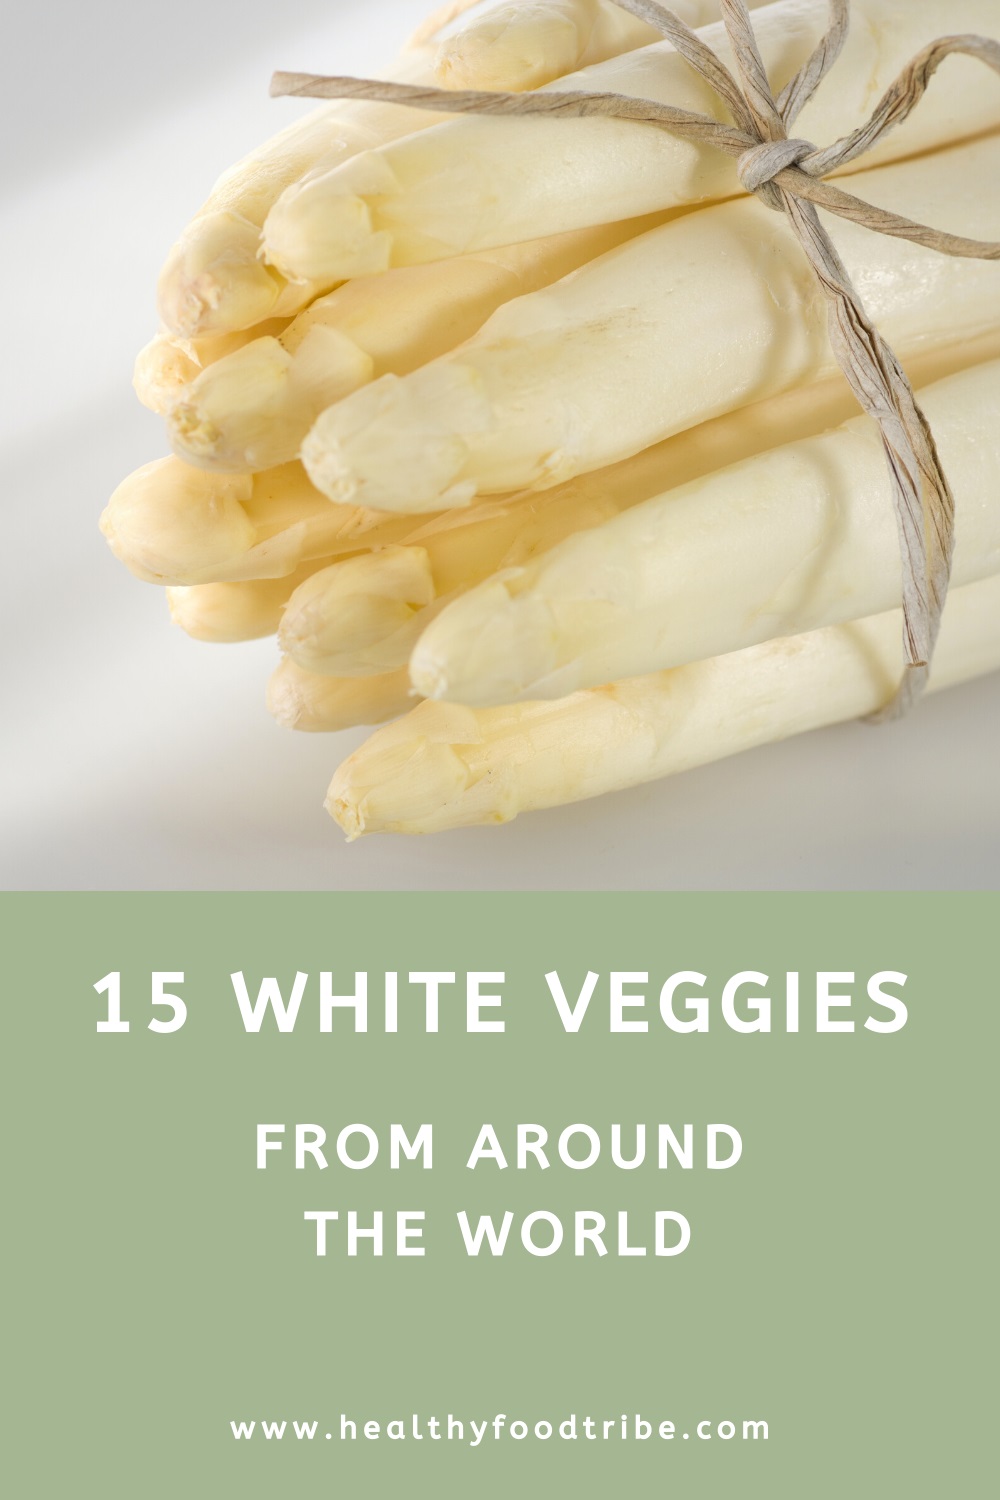 15 White veggies from around the world